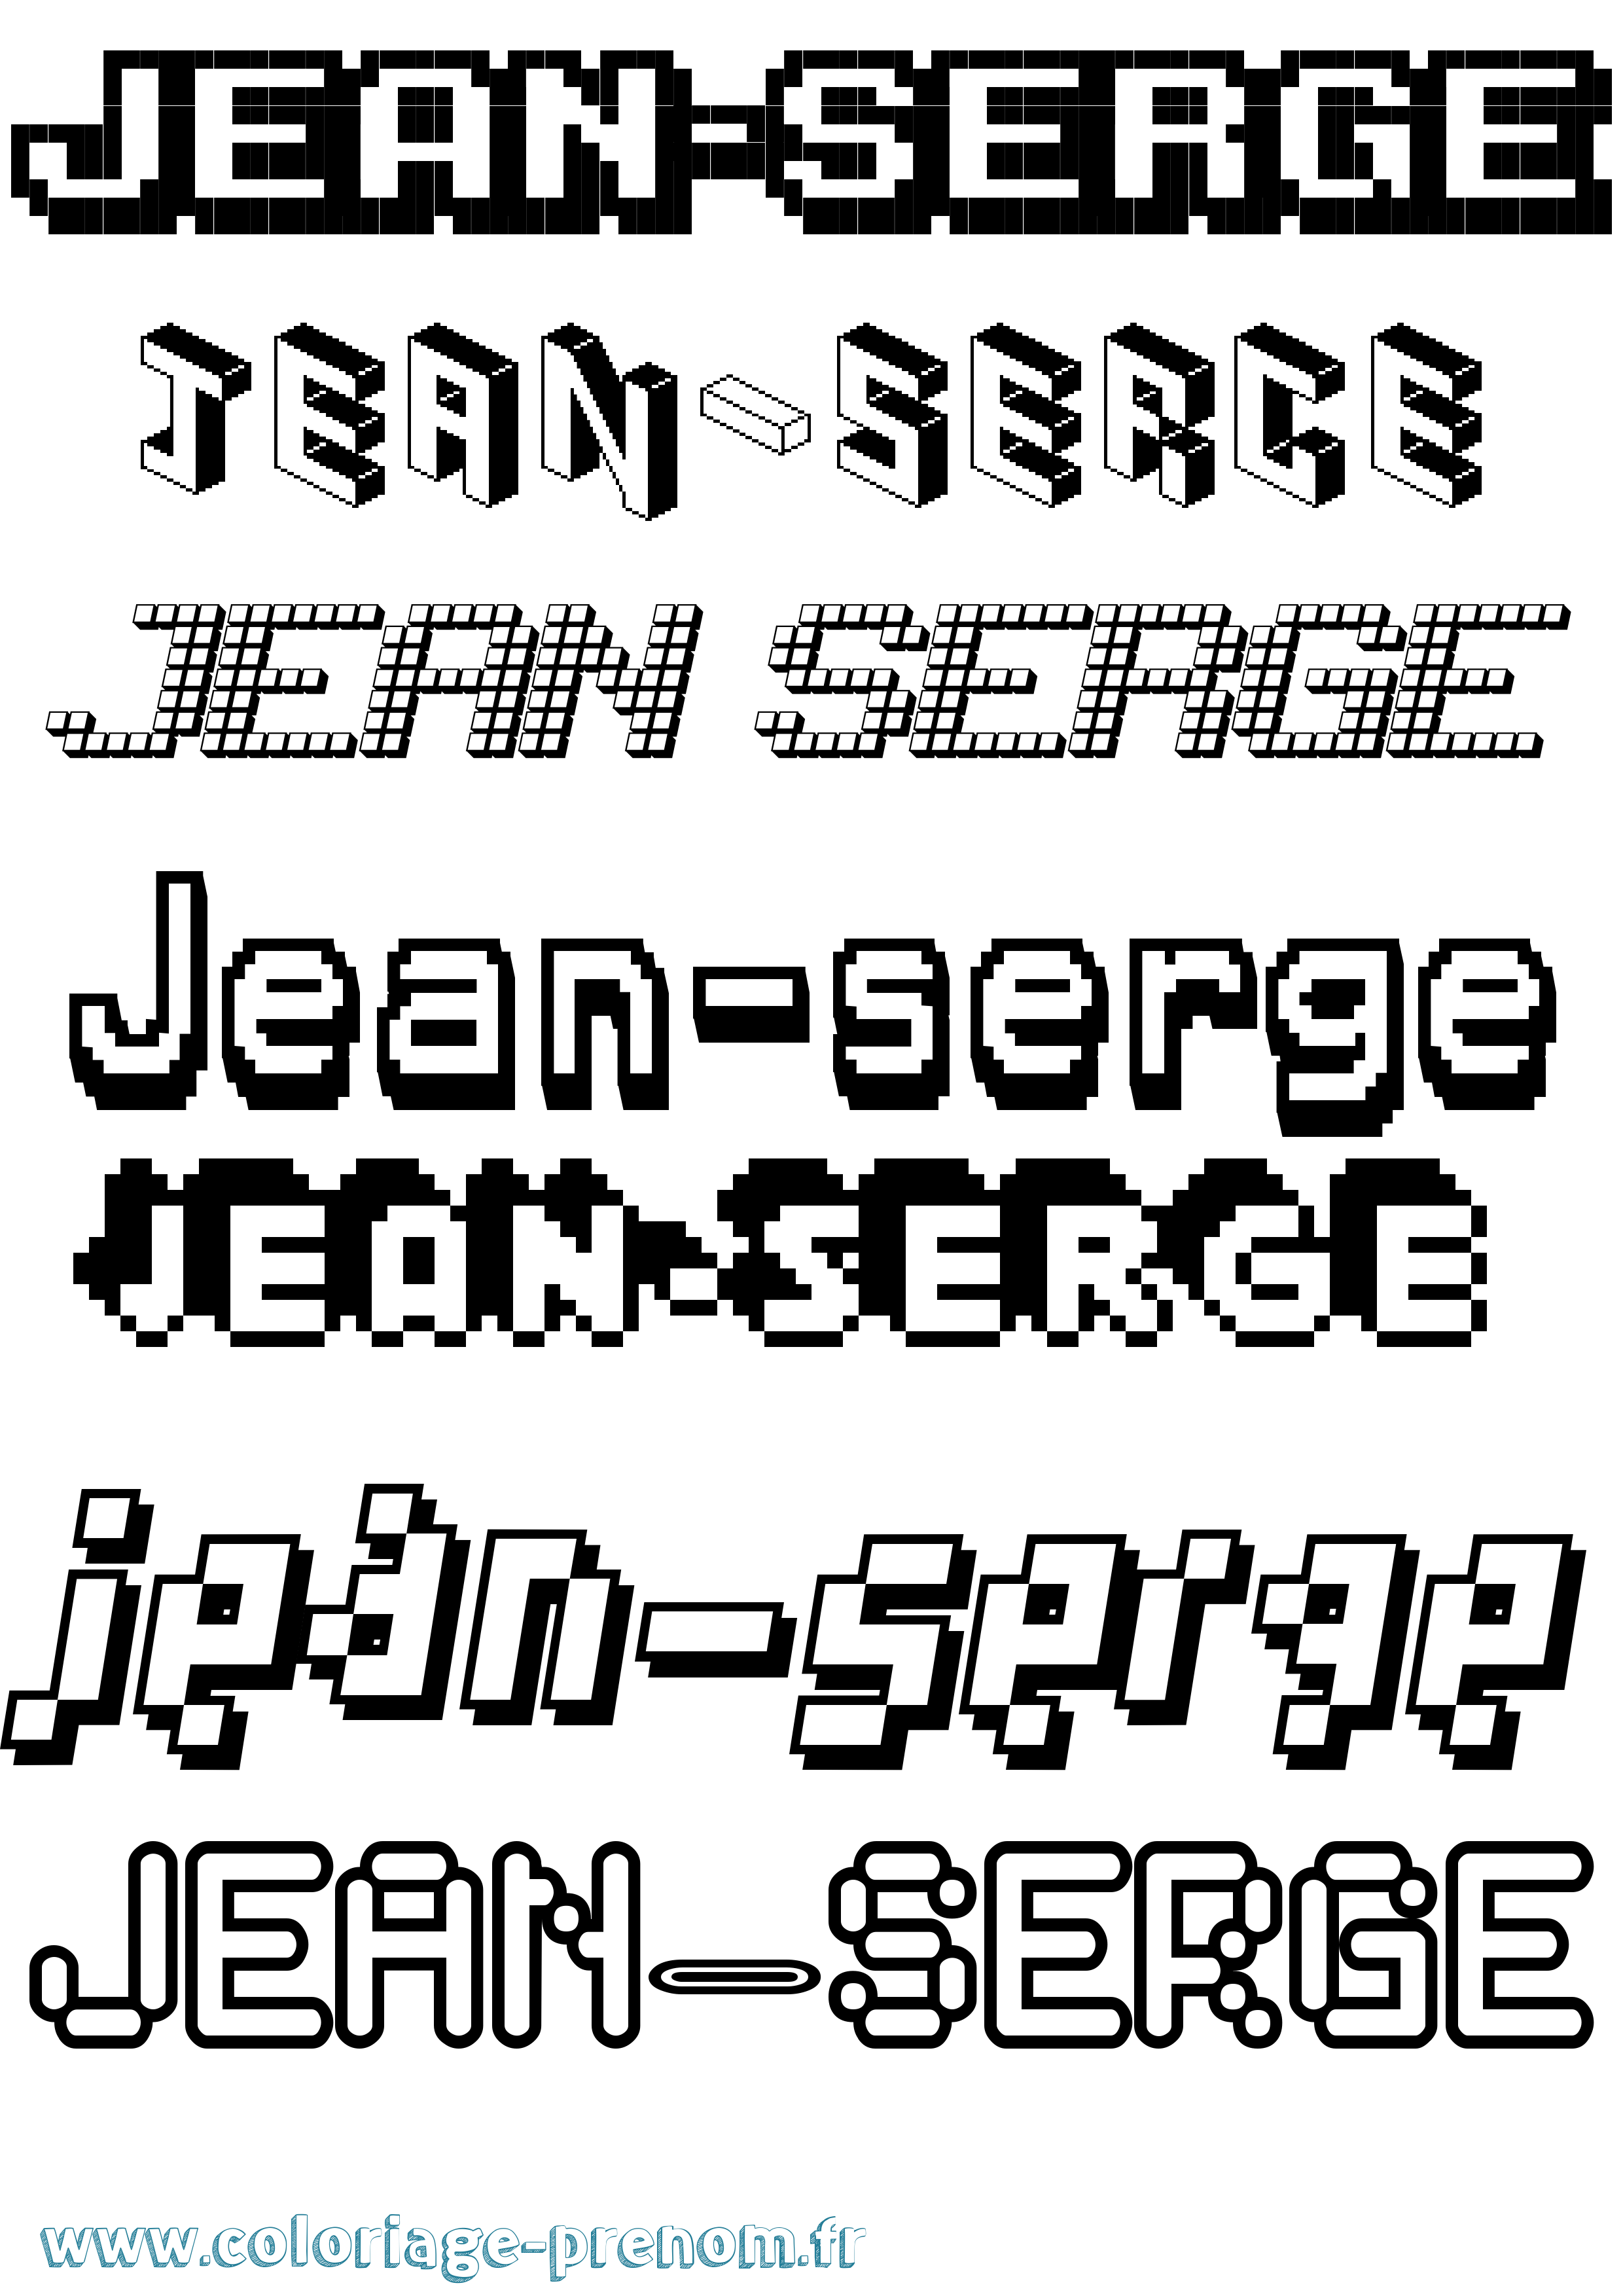 Coloriage prénom Jean-Serge Pixel